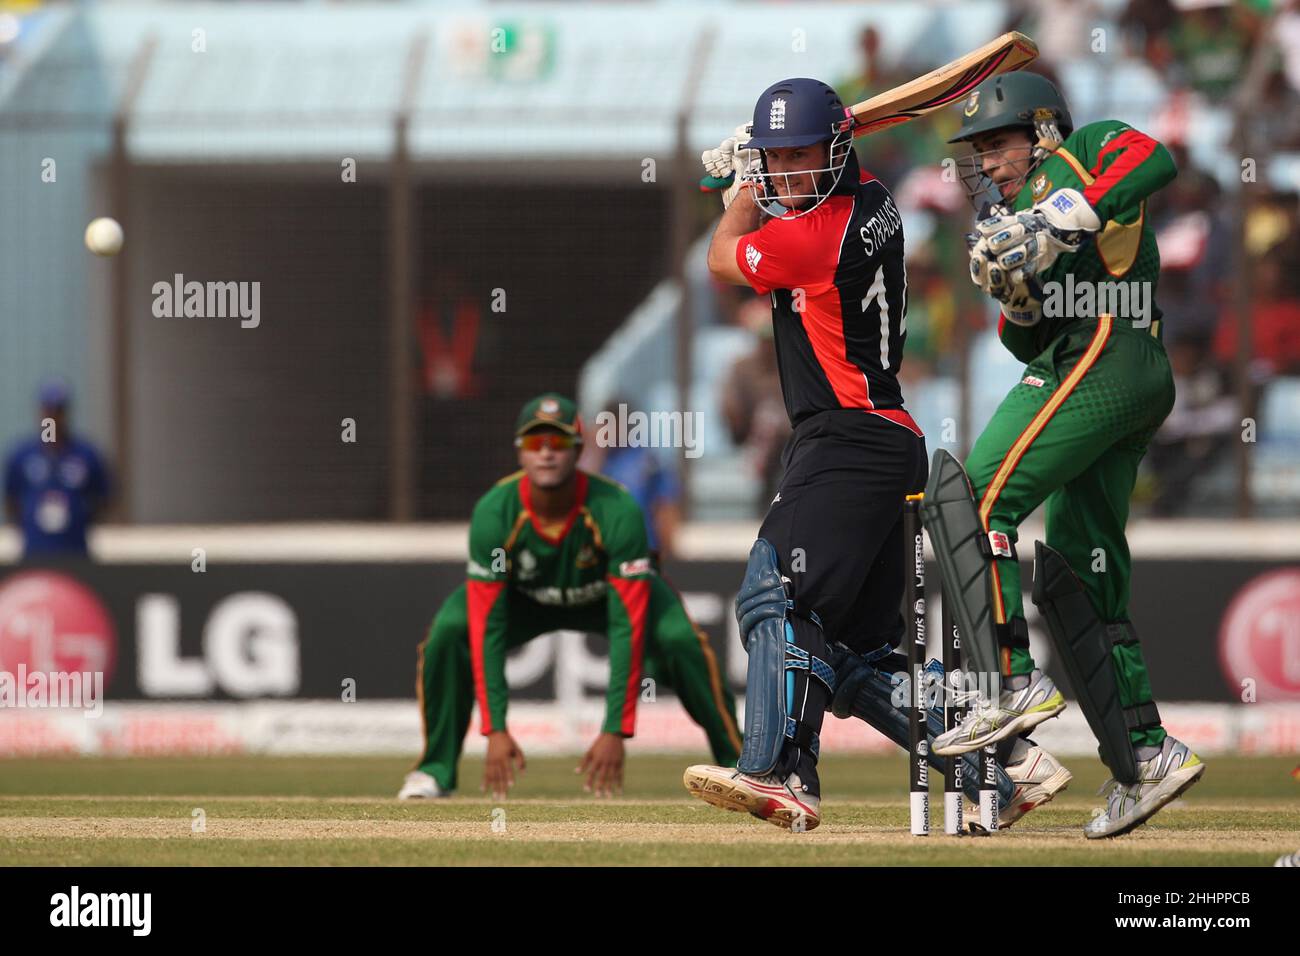 Der englische Cricket-Spieler Andrew Strauss wurde während des Spiels 28th in Chittagong von der ICC (International Cricket Council) Cricket World Cup zwischen Bangladesch und England in Aktion gesehen. Bangladesch gewann mit 2 Wickets (mit 6 verbleibenden Bällen). Stockfoto